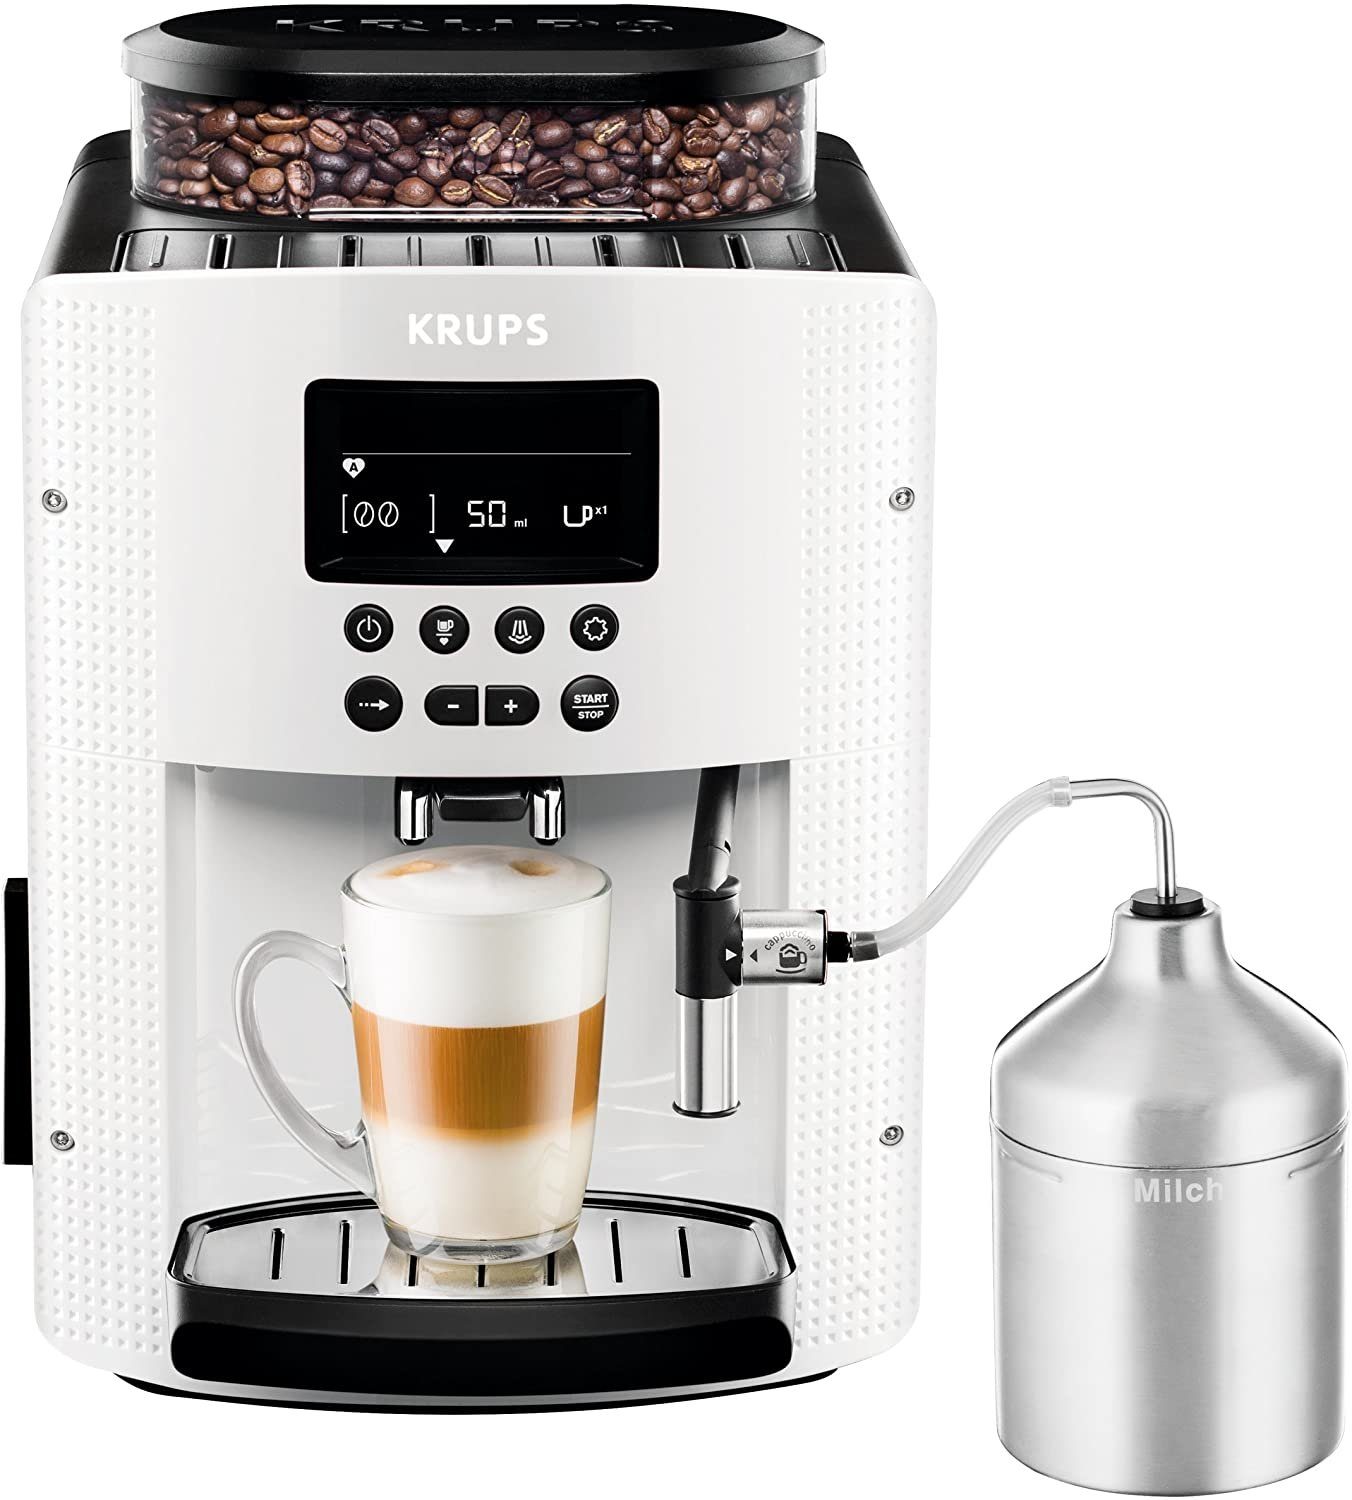 Krups Kaffeevollautomat EA8161 Espresso Kaf-fee-voll-au-to-mat INKLUSIVE XS6000 Pisa weiß